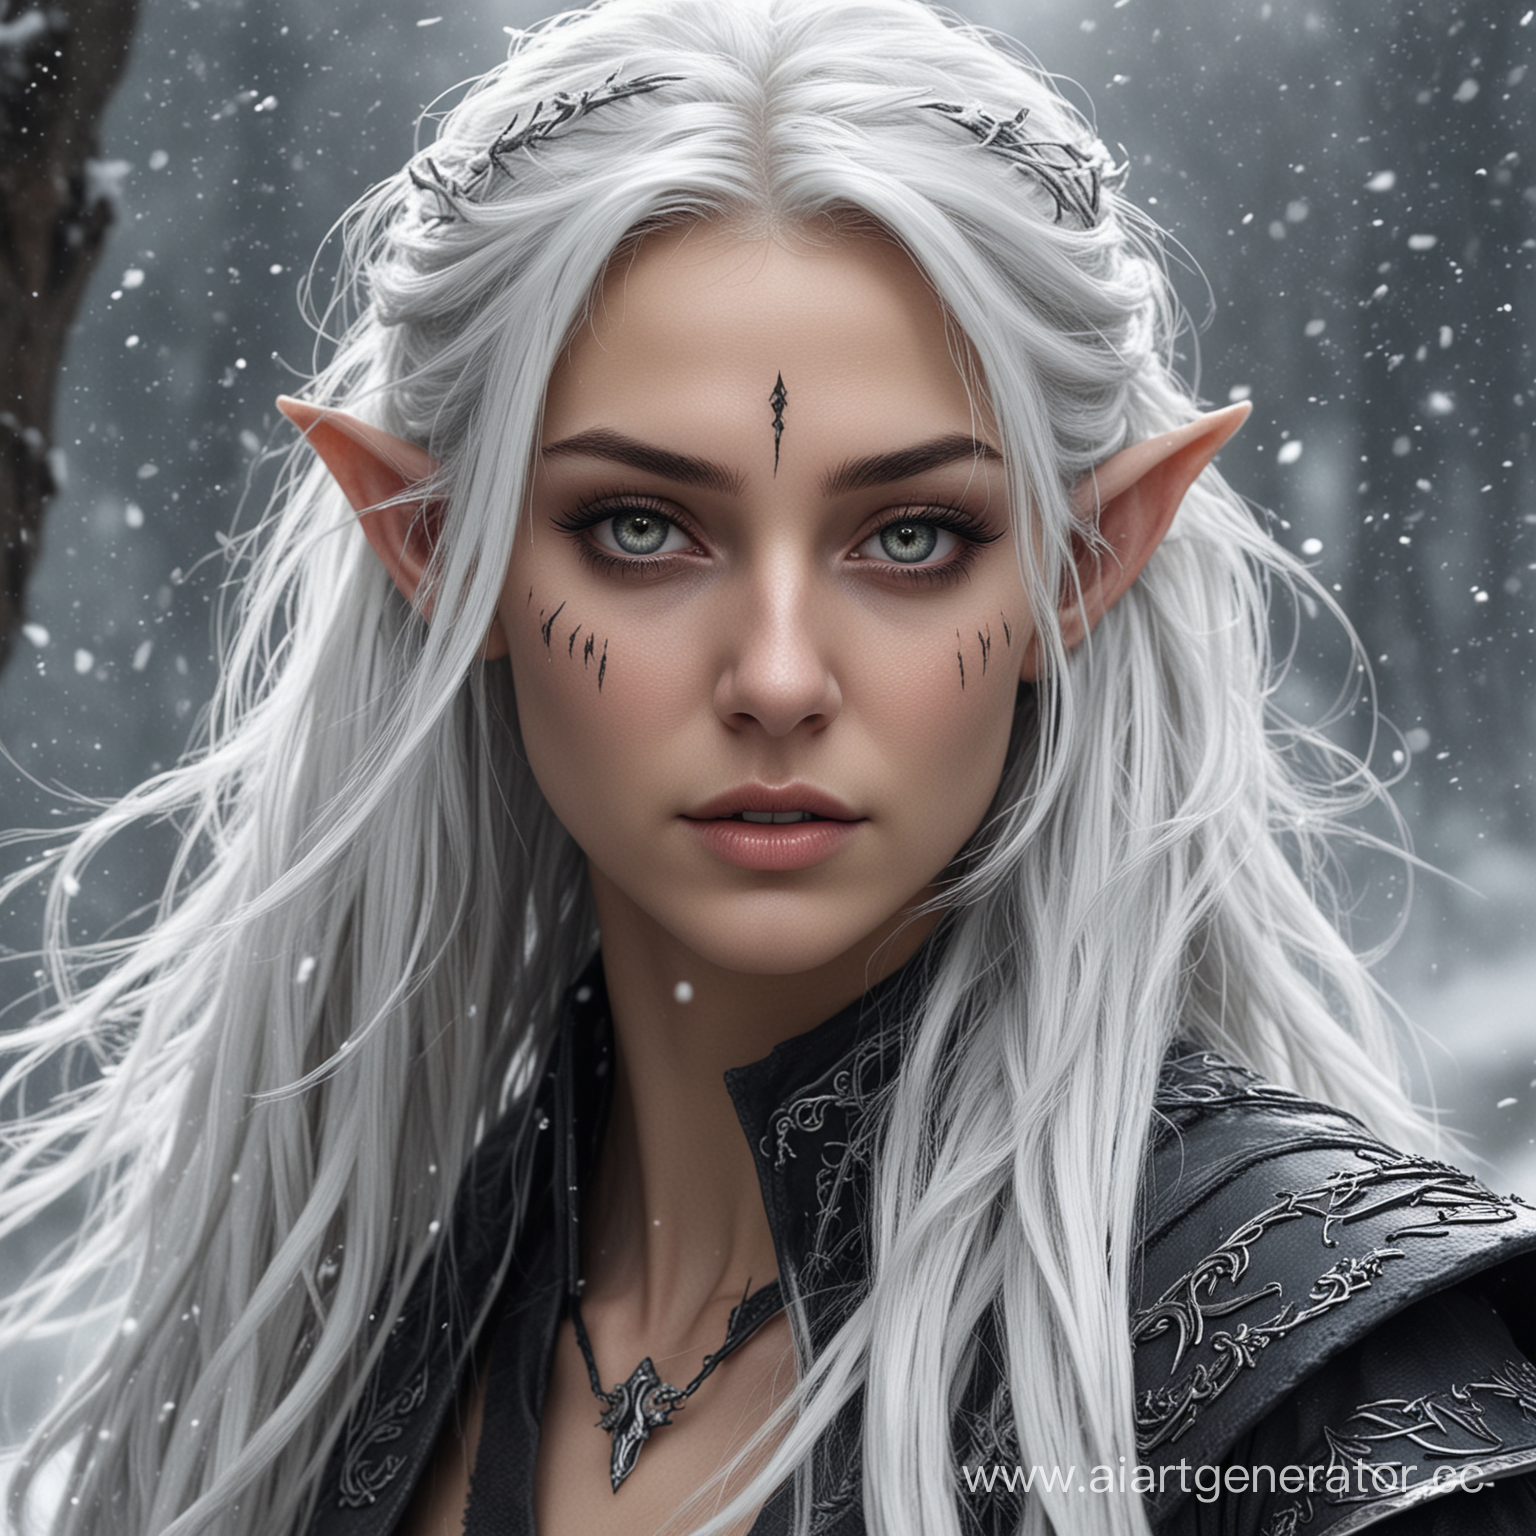 темная эльфийская колдунья с острыми ушами, серой кожей, с белоснежными волосами развивающимися на ветру, полностью белыми глазами, с рваным шрамом через правый глаз